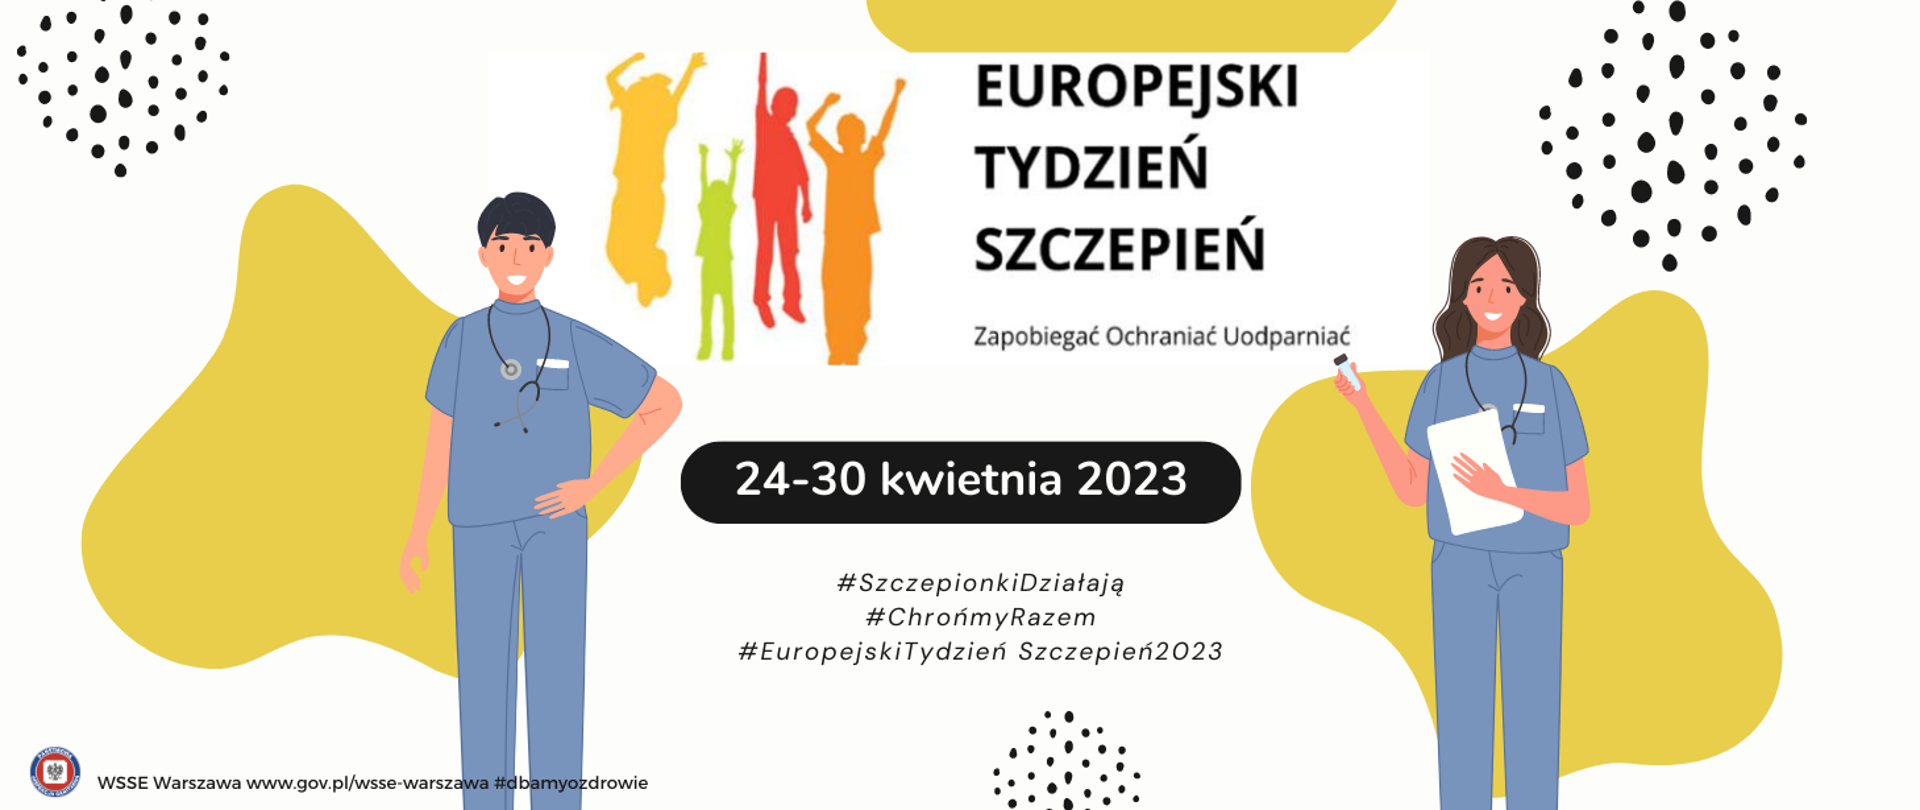 Europejski_Tydzień_Szczepień_2023_slider